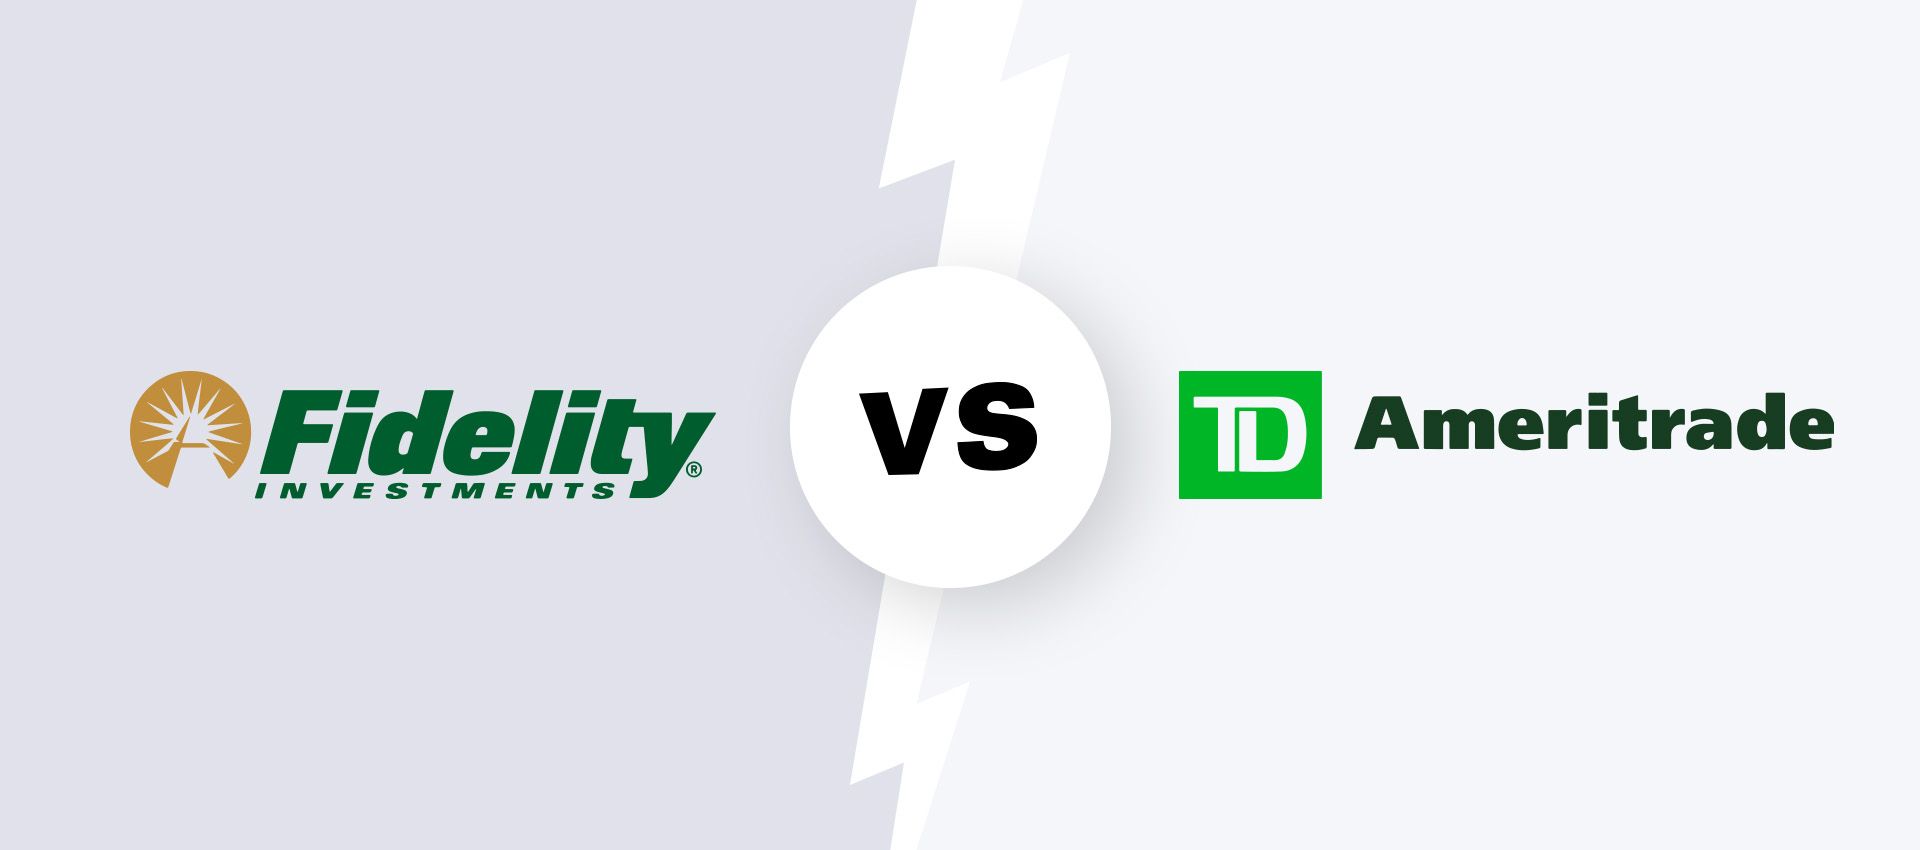 Fidelity investments logo vs. TD Ameritrade logo